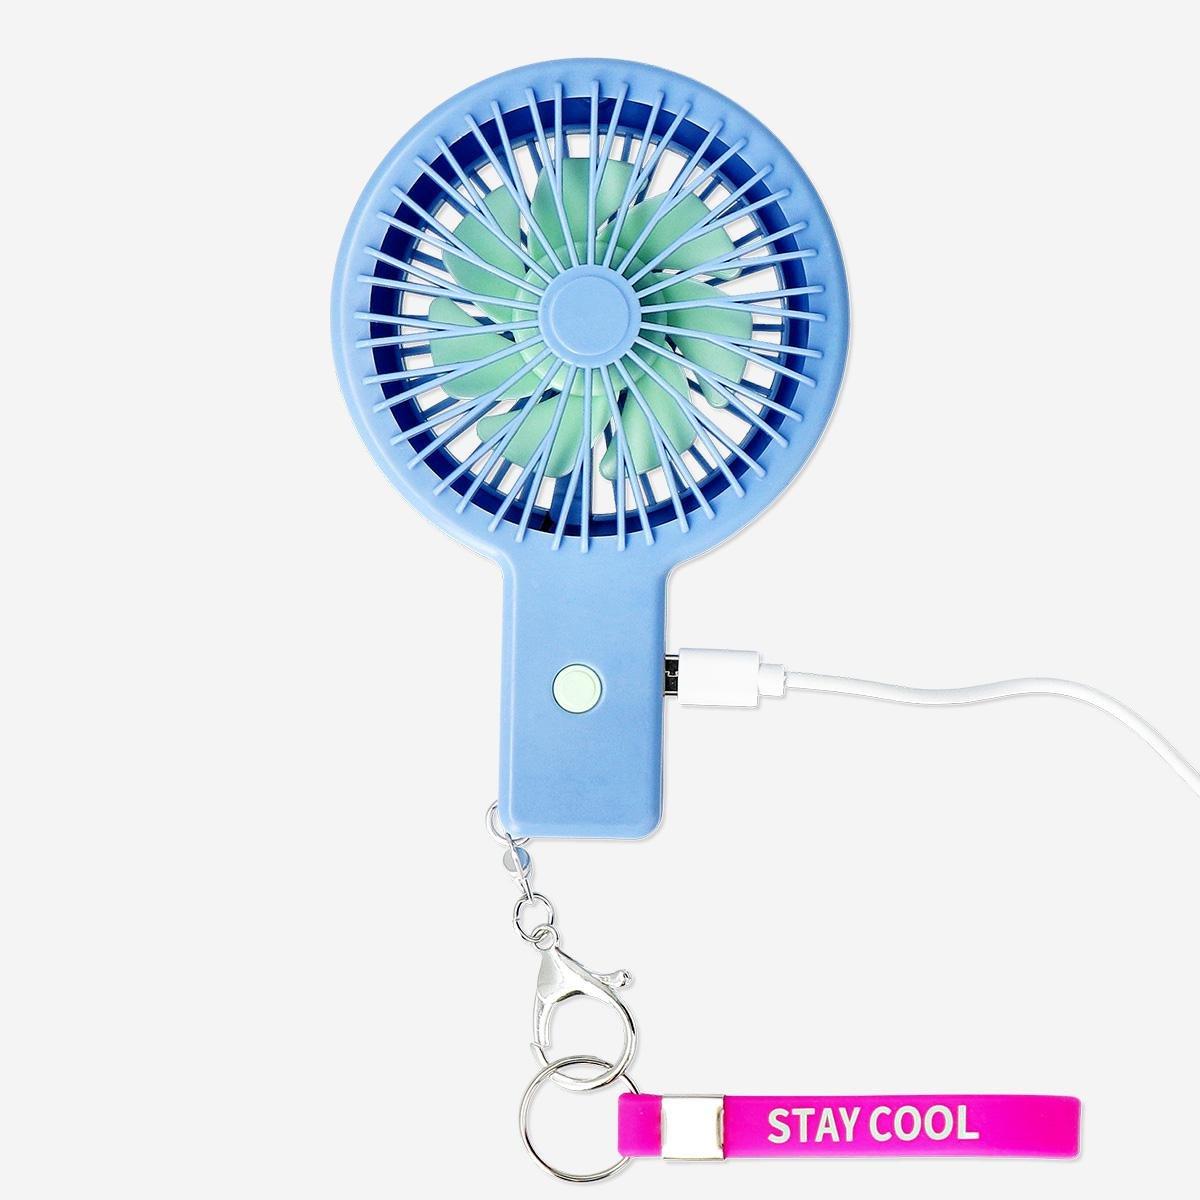 Blue rechargeable fan